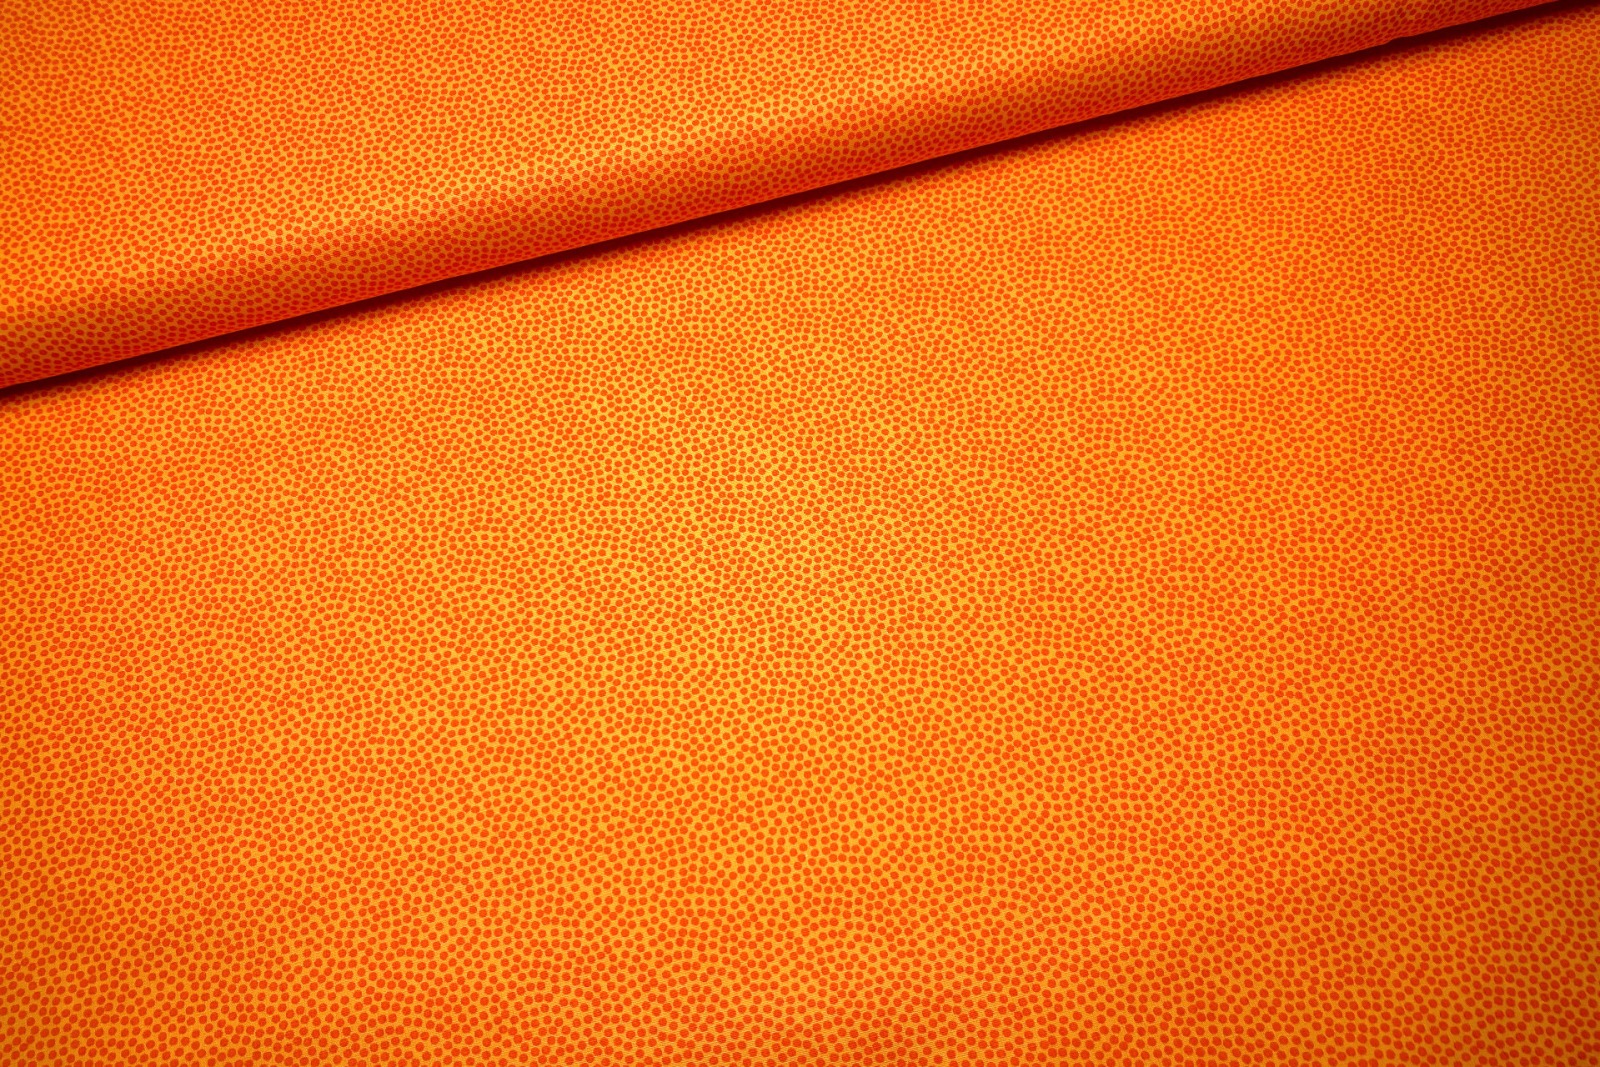 Baumwollwebware - unregelmäßige Punkte - gelb/orange - 100% Baumwolle - Dotty - Swafing 3